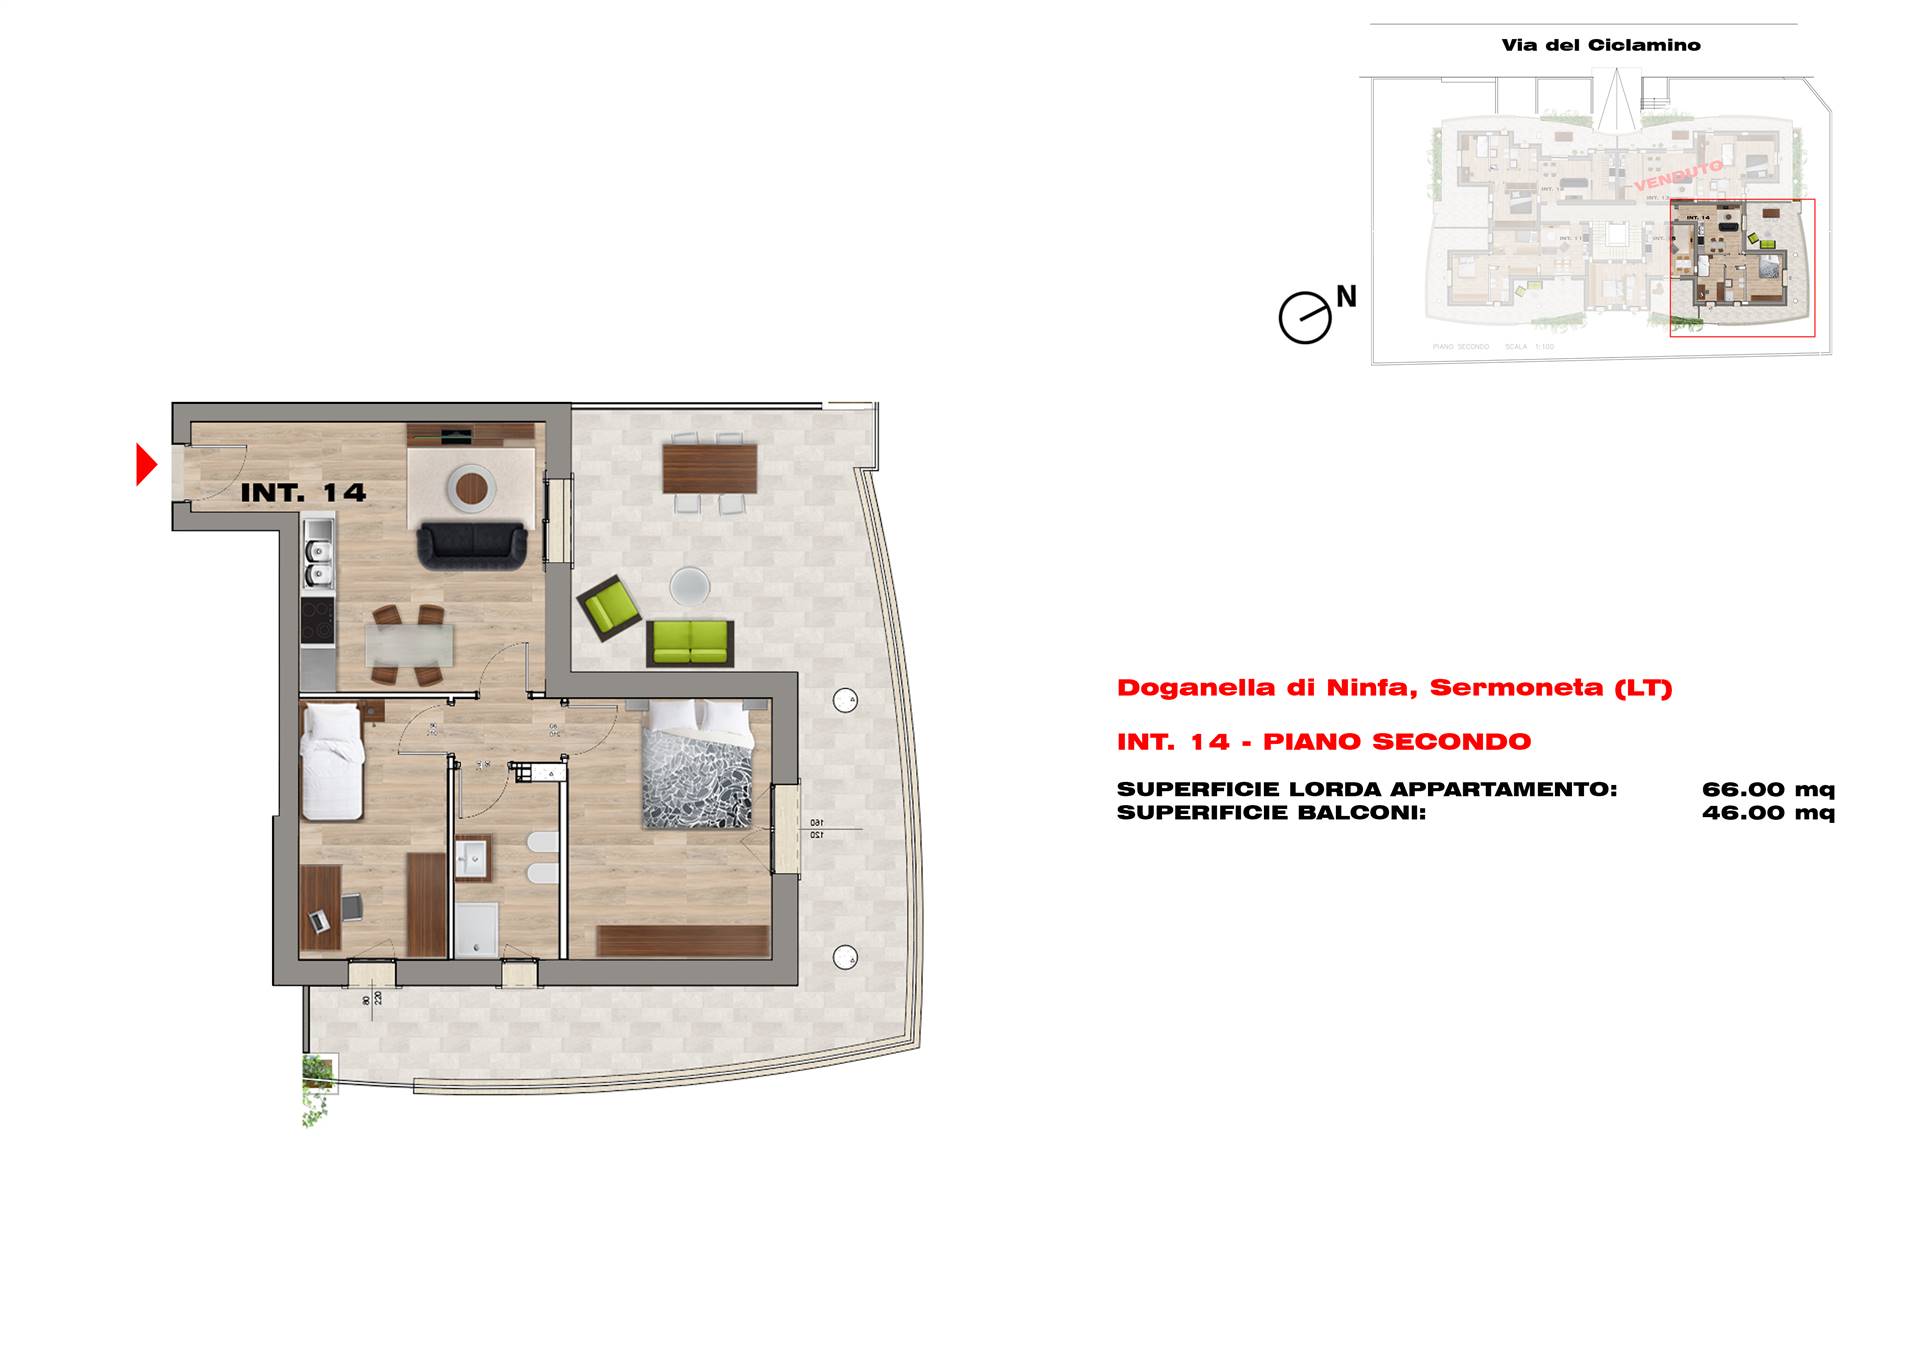 BIVIO DI DOGANELLA, SERMONETA, Appartamento in vendita di 66 Mq, Nuova costruzione, Riscaldamento Centralizzato, posto al piano 2° su 3, composto da: 